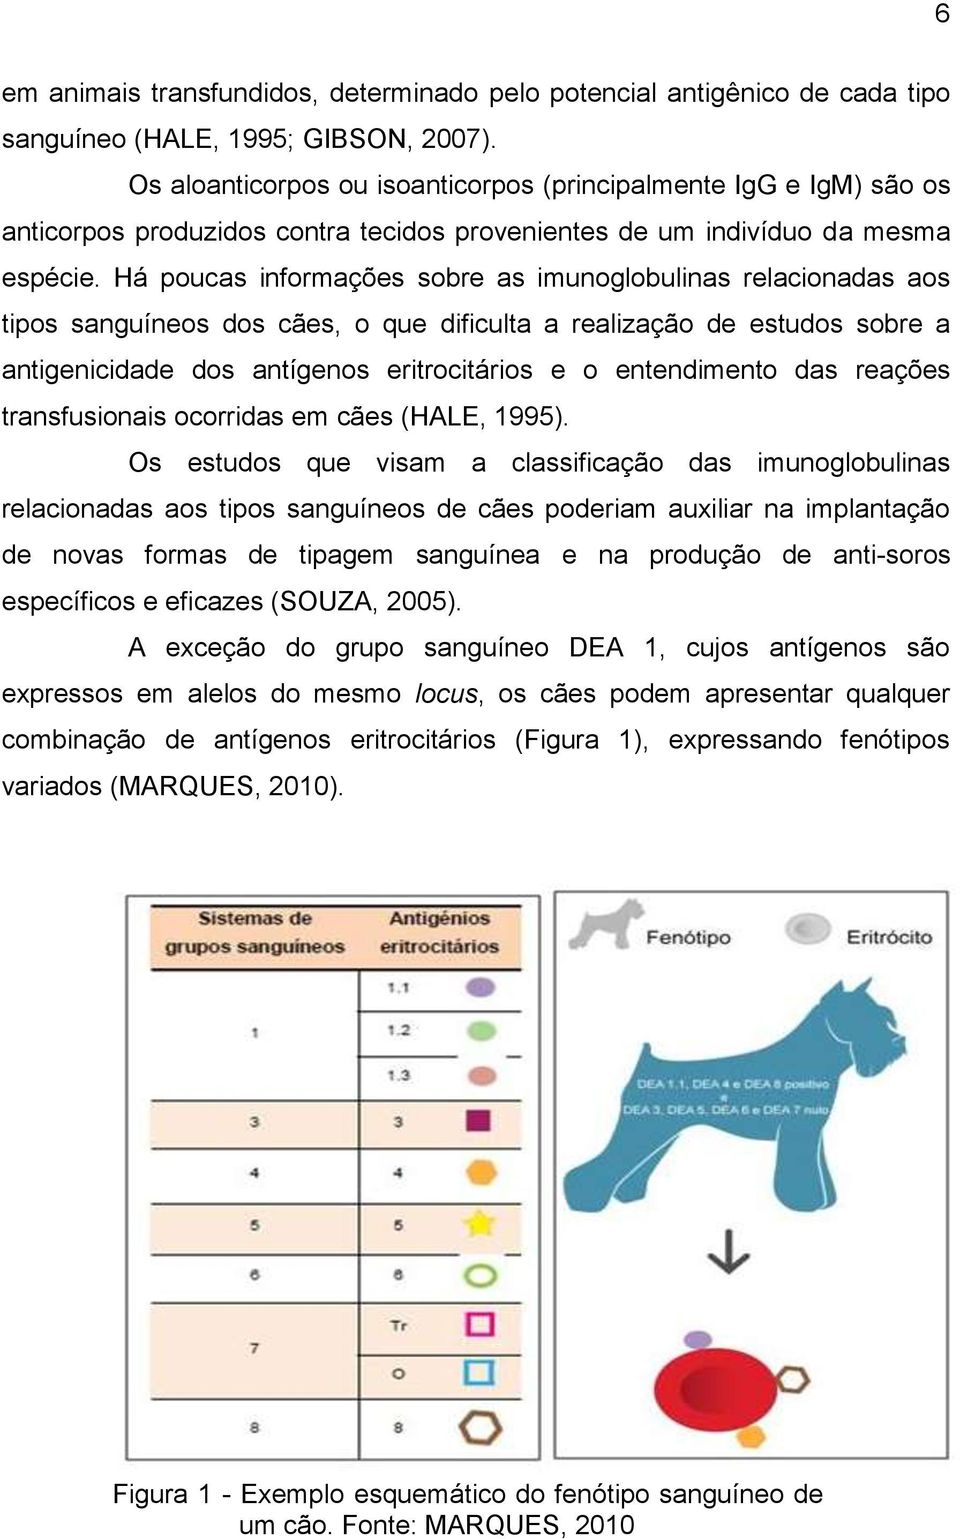 Há poucas informações sobre as imunoglobulinas relacionadas aos tipos sanguíneos dos cães, o que dificulta a realização de estudos sobre a antigenicidade dos antígenos eritrocitários e o entendimento